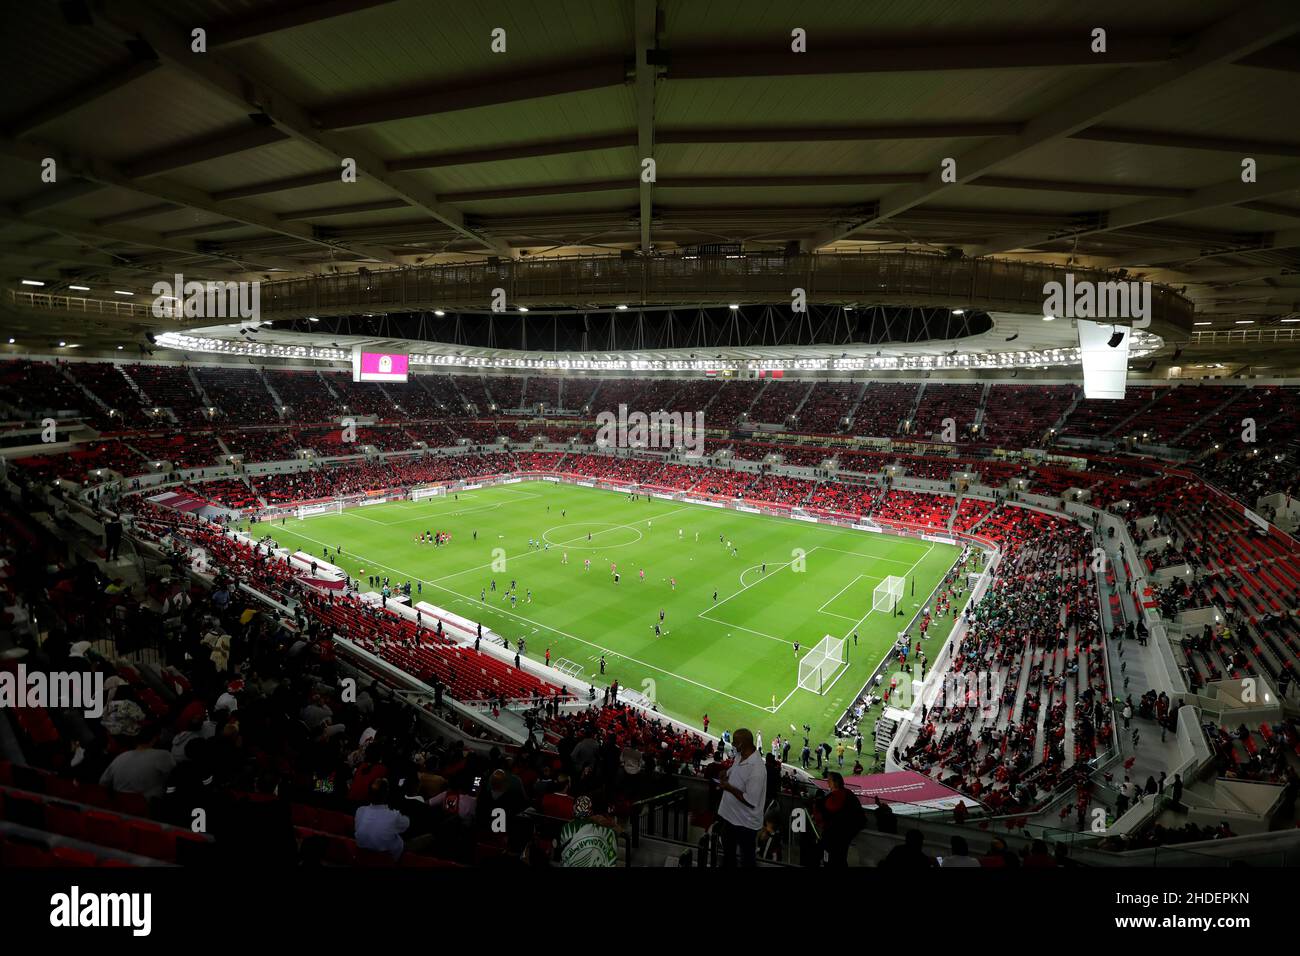 Allgemeine Ansicht des Ahmed bin Ali Stadions in Al Rayyan, Katar, aufgenommen während des FIFA Arab Cup, dem Aufbau bis zur FIFA Weltmeisterschaft 2022. Foto von MB Media 22/12/2021 Stockfoto